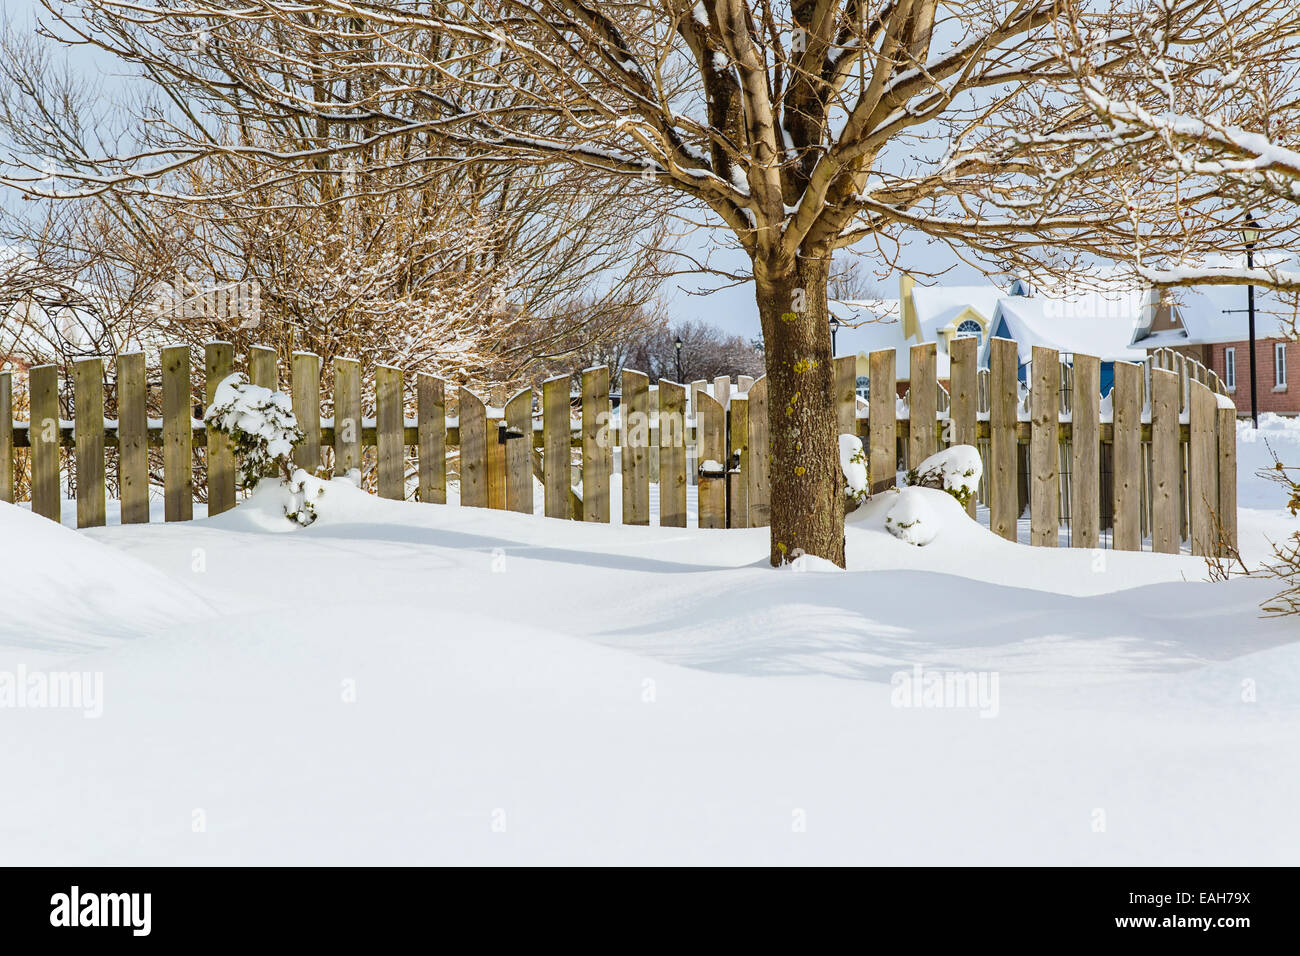 Garden gate of a suburban garden buried in snow. Stock Photo